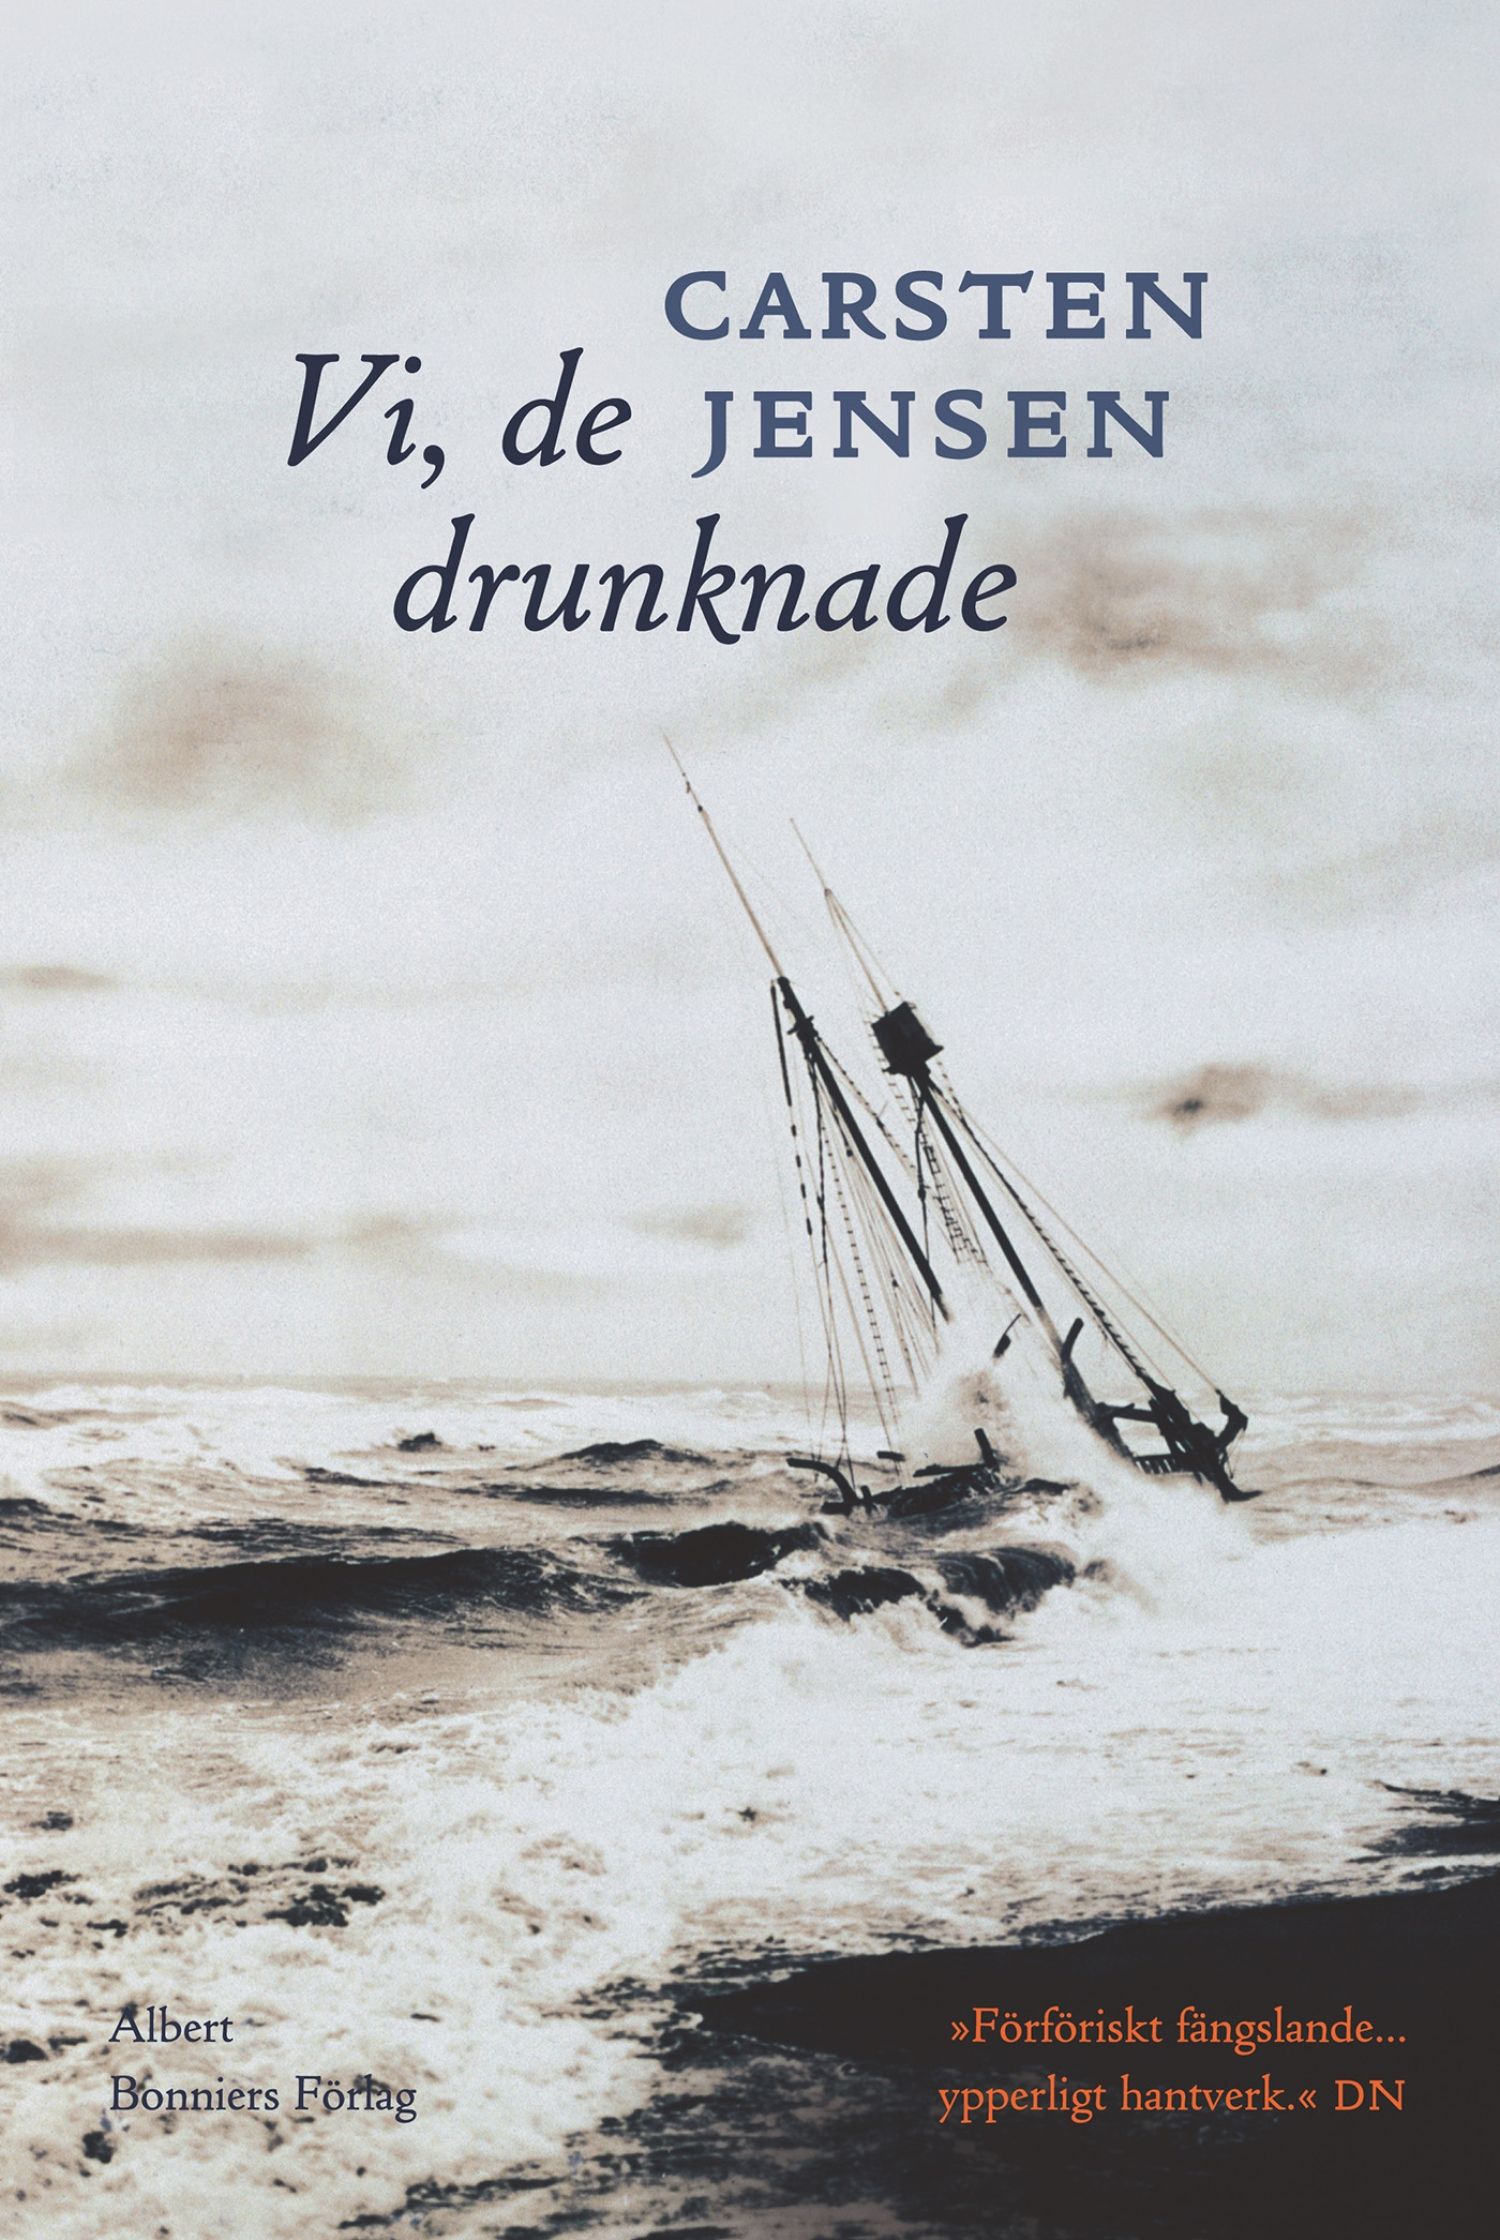 Vi, de drunknade, e-bog af Carsten Jensen